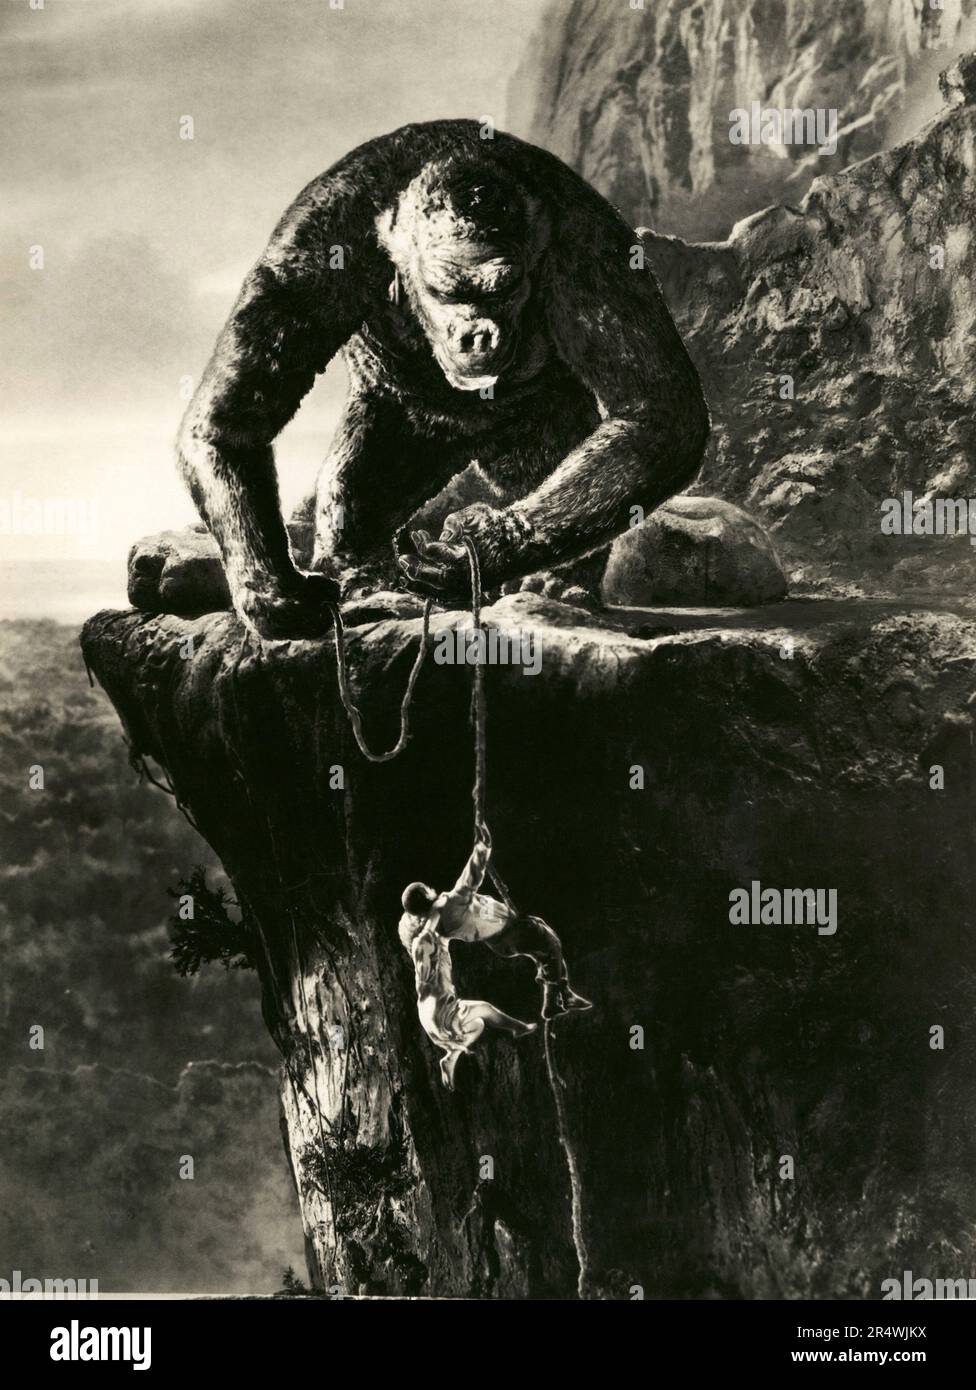 King Kong ist ein 1933 American fantasy Monster/Abenteuer Film. Es Sterne Fay Wray, Bruce Cabot, Robert Armstrong, und in New York City eröffnet am 2. März 1933 begeisterte Kritiken. Der Film erzählt von einem gigantischen, Insel lebenden Affen namens Kong wer stirbt bei dem Versuch, eine schöne junge Frau zu besitzen. Hongkong ist für seine Stop-motion Animation von Willis O'Brien und seine musikalische Kerbe von Max Steiner. King Kong wird häufig als eine der kultigsten Filme in der Geschichte des Kinos bezeichnet. Stockfoto